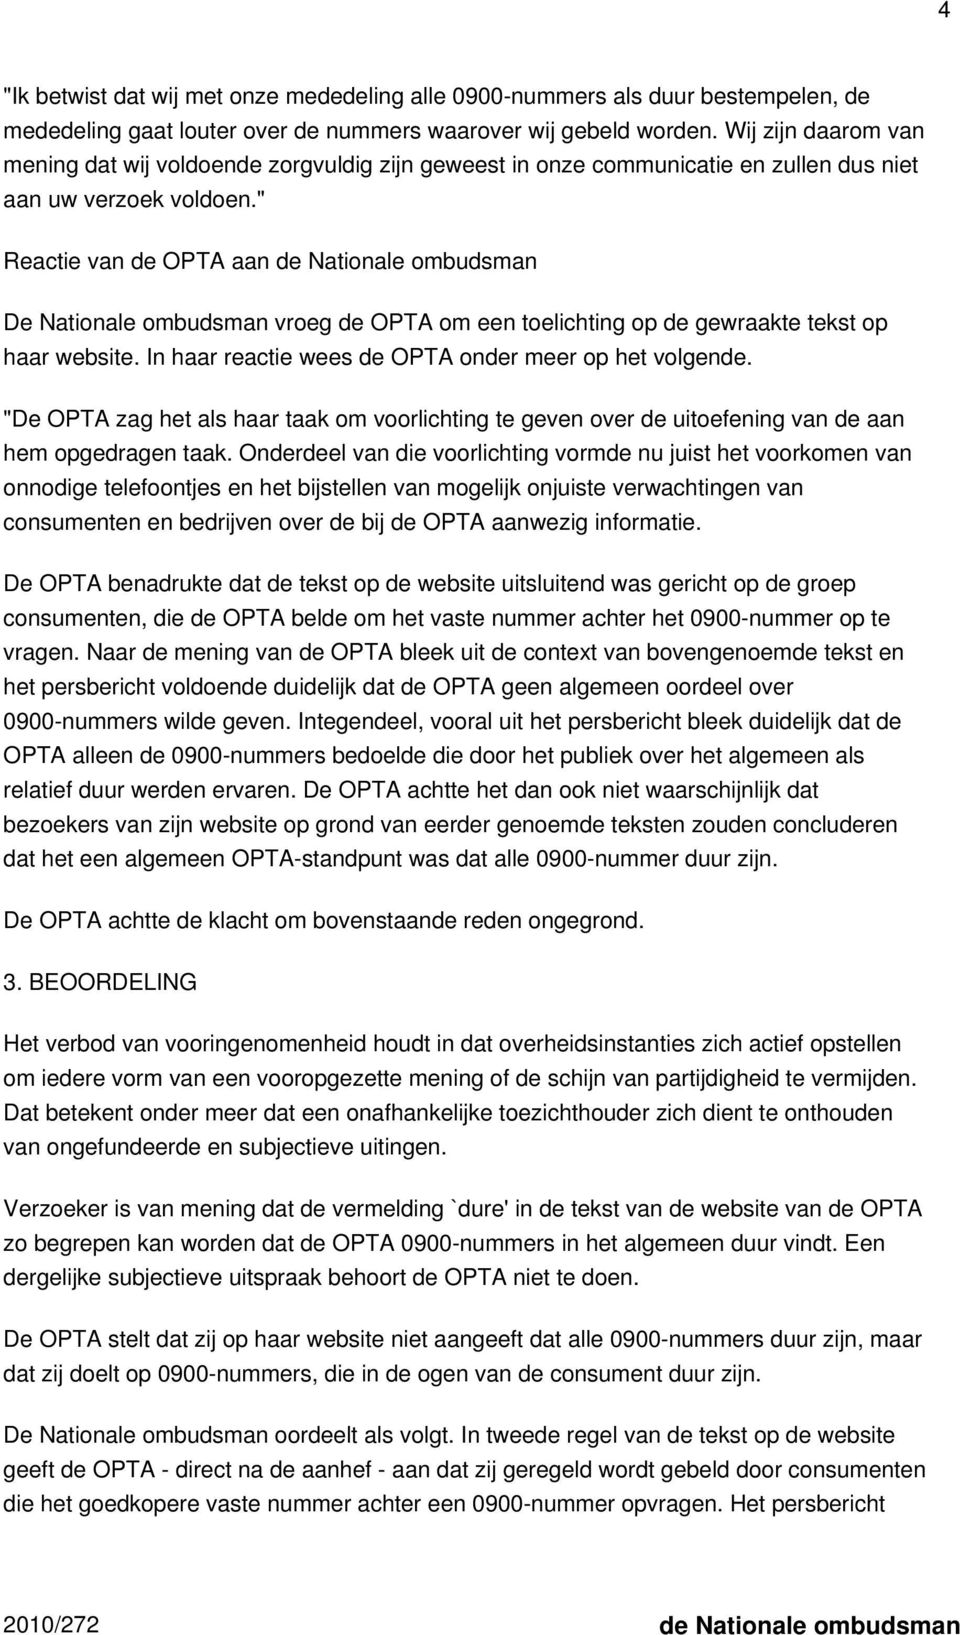 " Reactie van de OPTA aan de Nationale ombudsman De Nationale ombudsman vroeg de OPTA om een toelichting op de gewraakte tekst op haar website. In haar reactie wees de OPTA onder meer op het volgende.